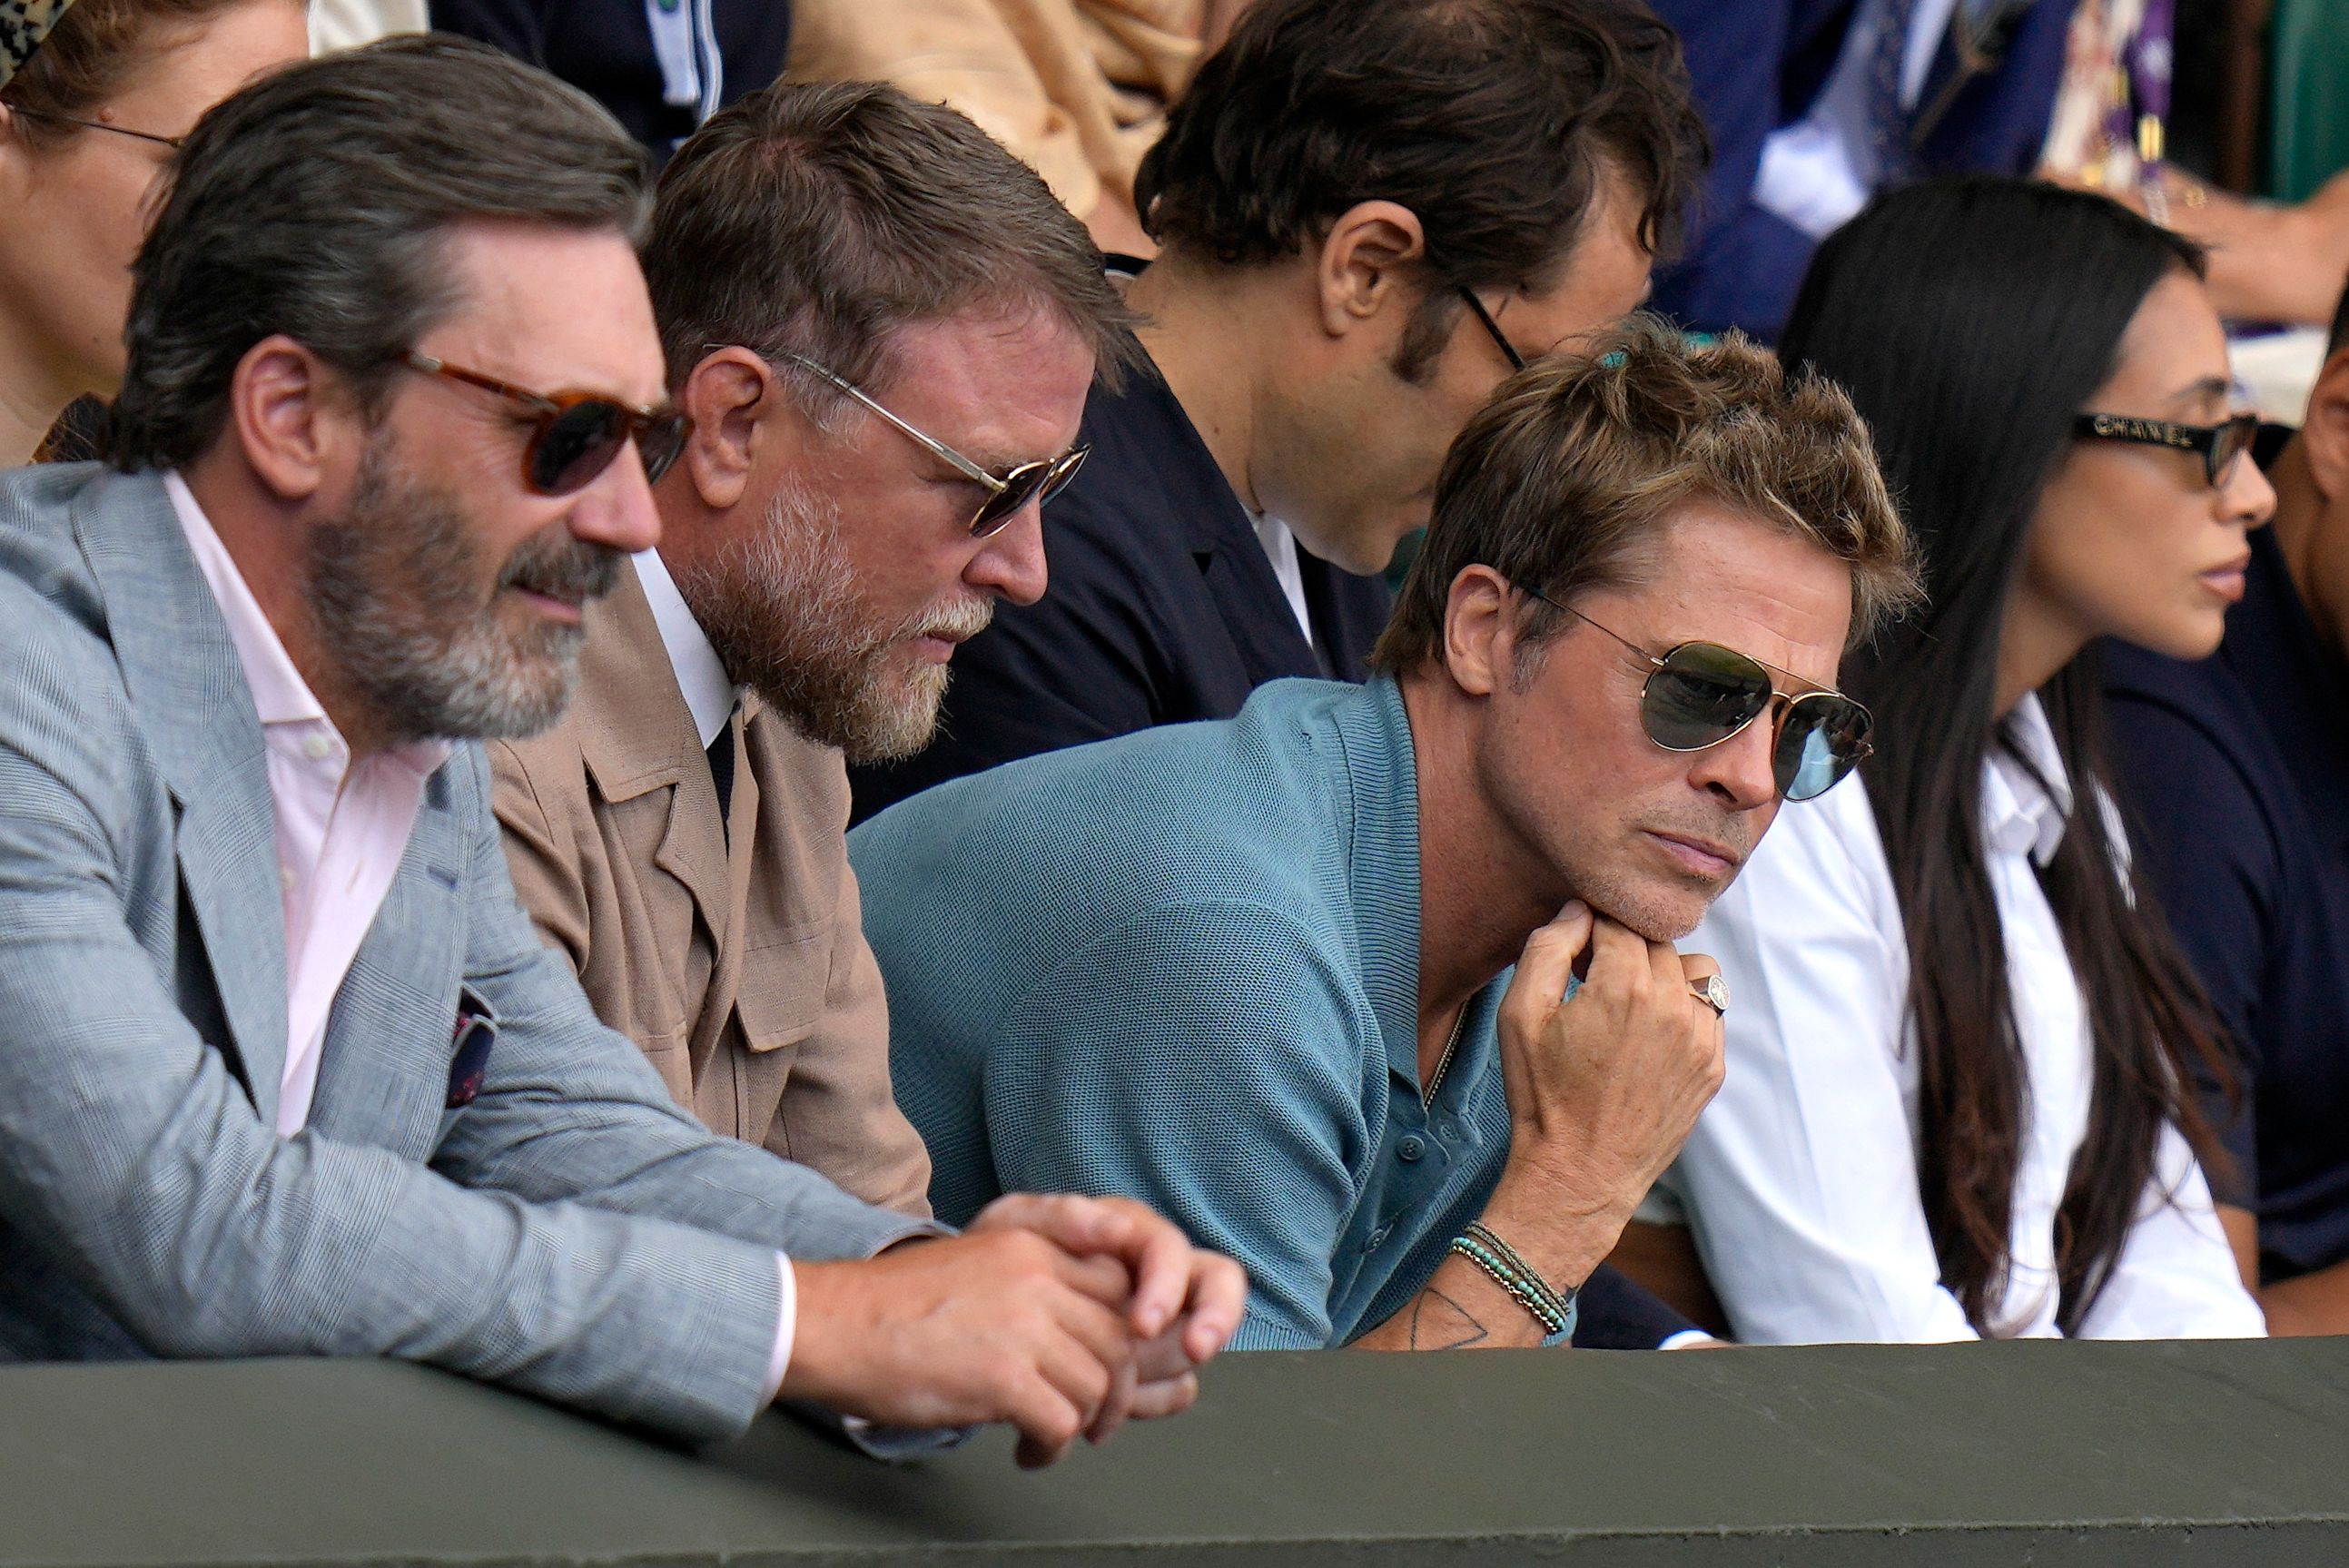 Brad Pitt among stars at Wimbledon for men's final